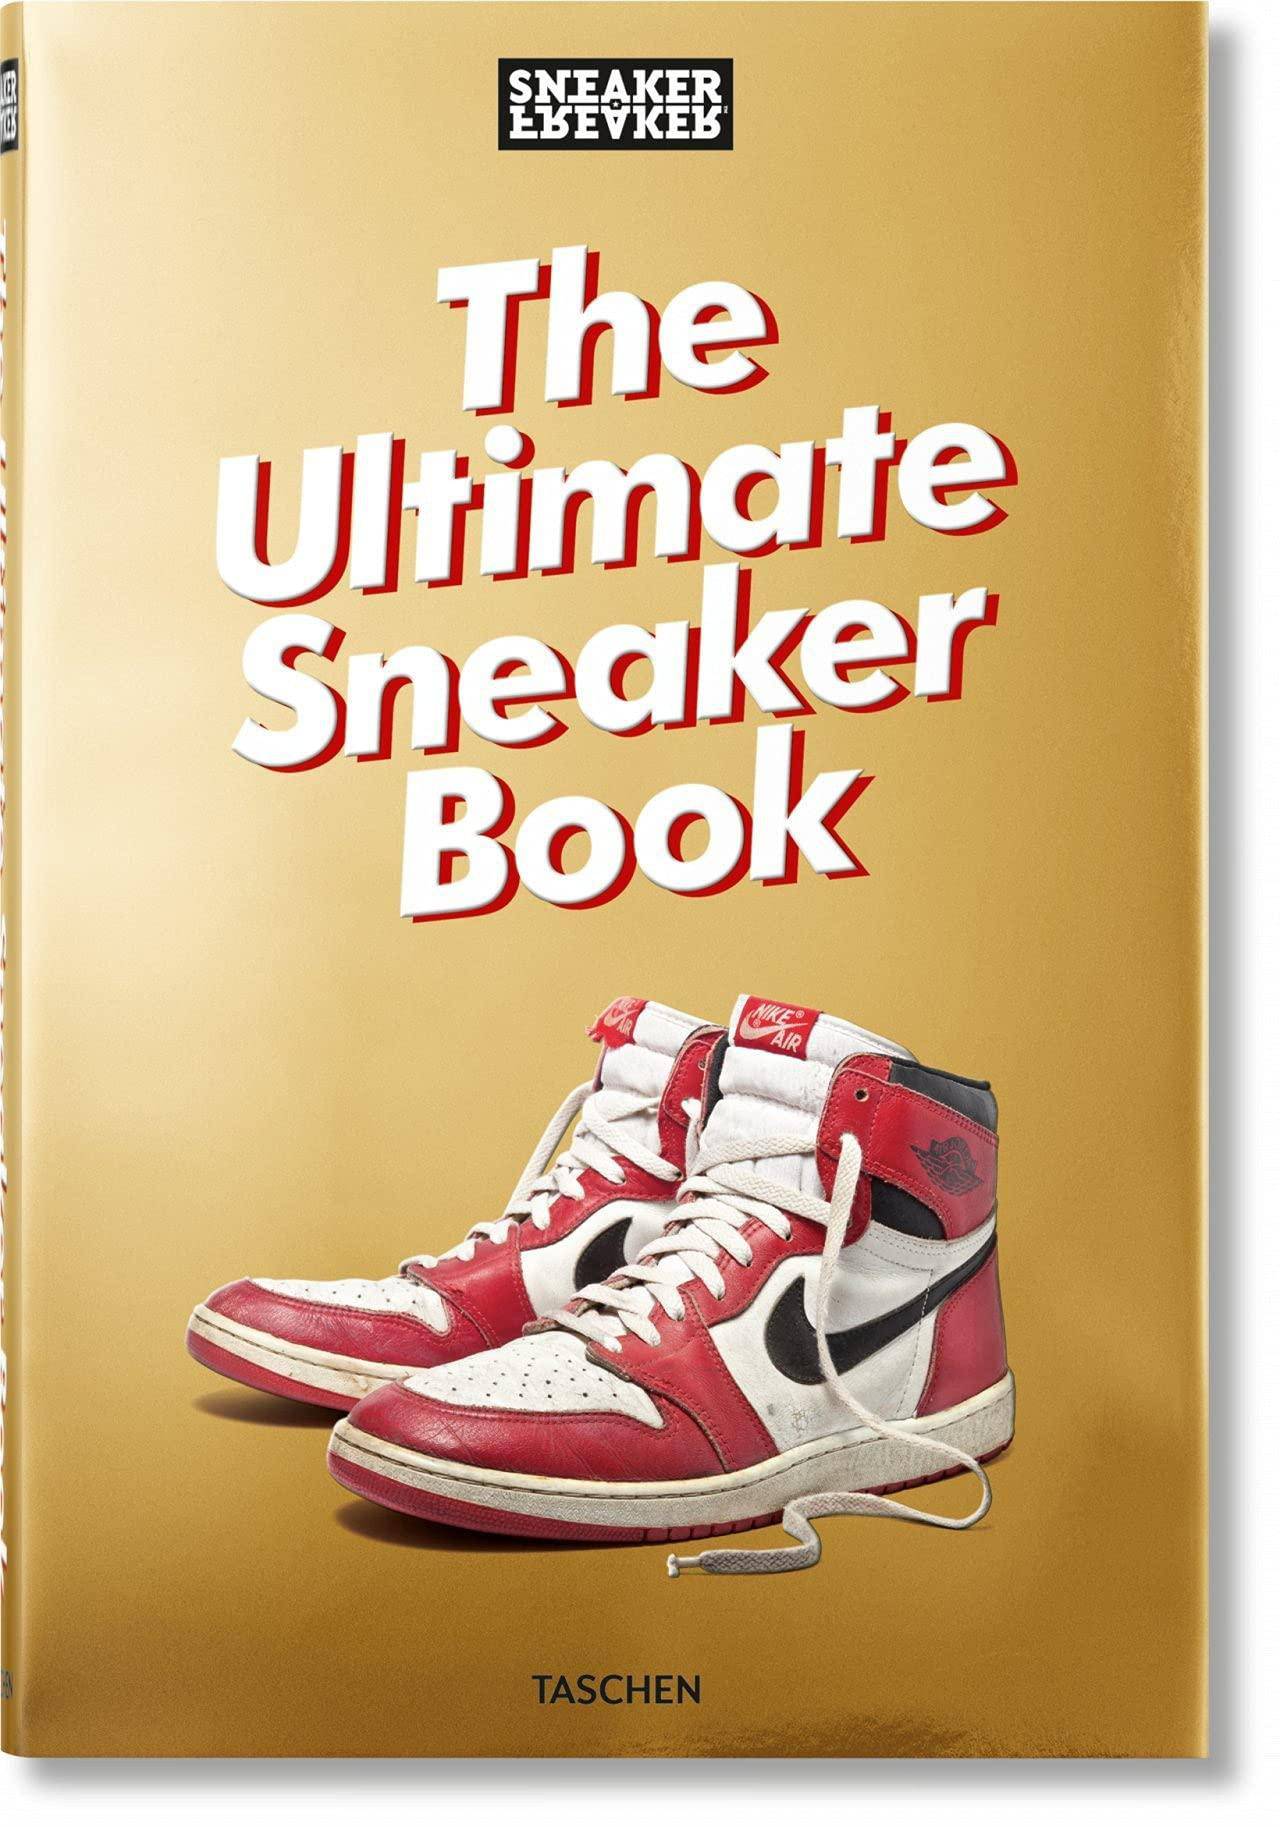 Sneaker Freaker - SureShot Books Publishing LLC